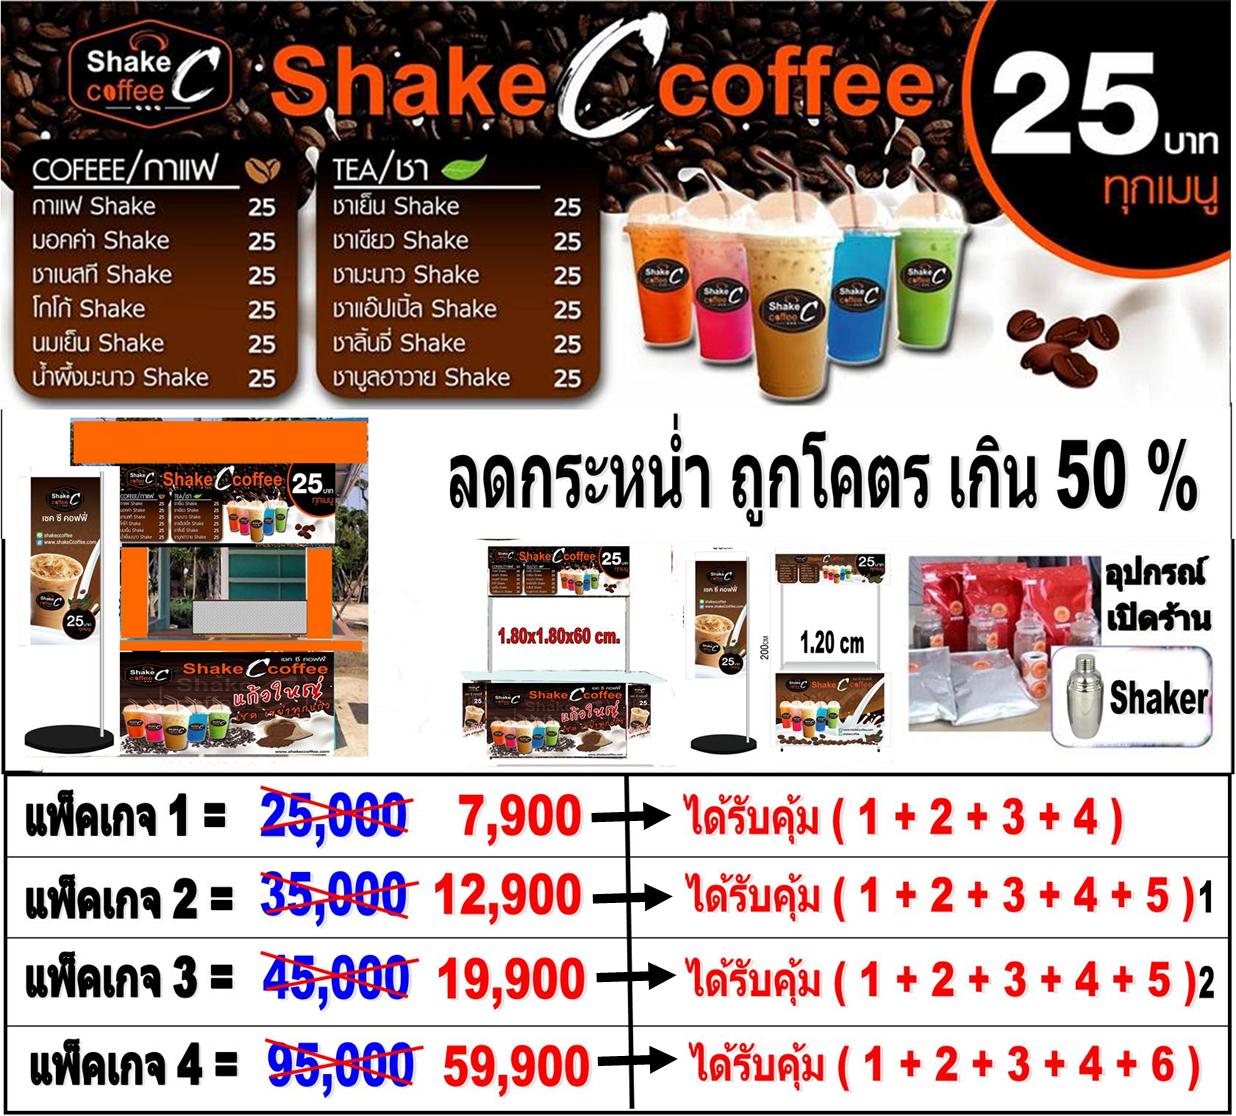 เปิดร้านกาแฟ 7900 แฟรนไชส์กาแฟ Shakeccoffee กาแฟสูตรมาตรฐาน กำไรดี:  แพ็คเกจ/Package